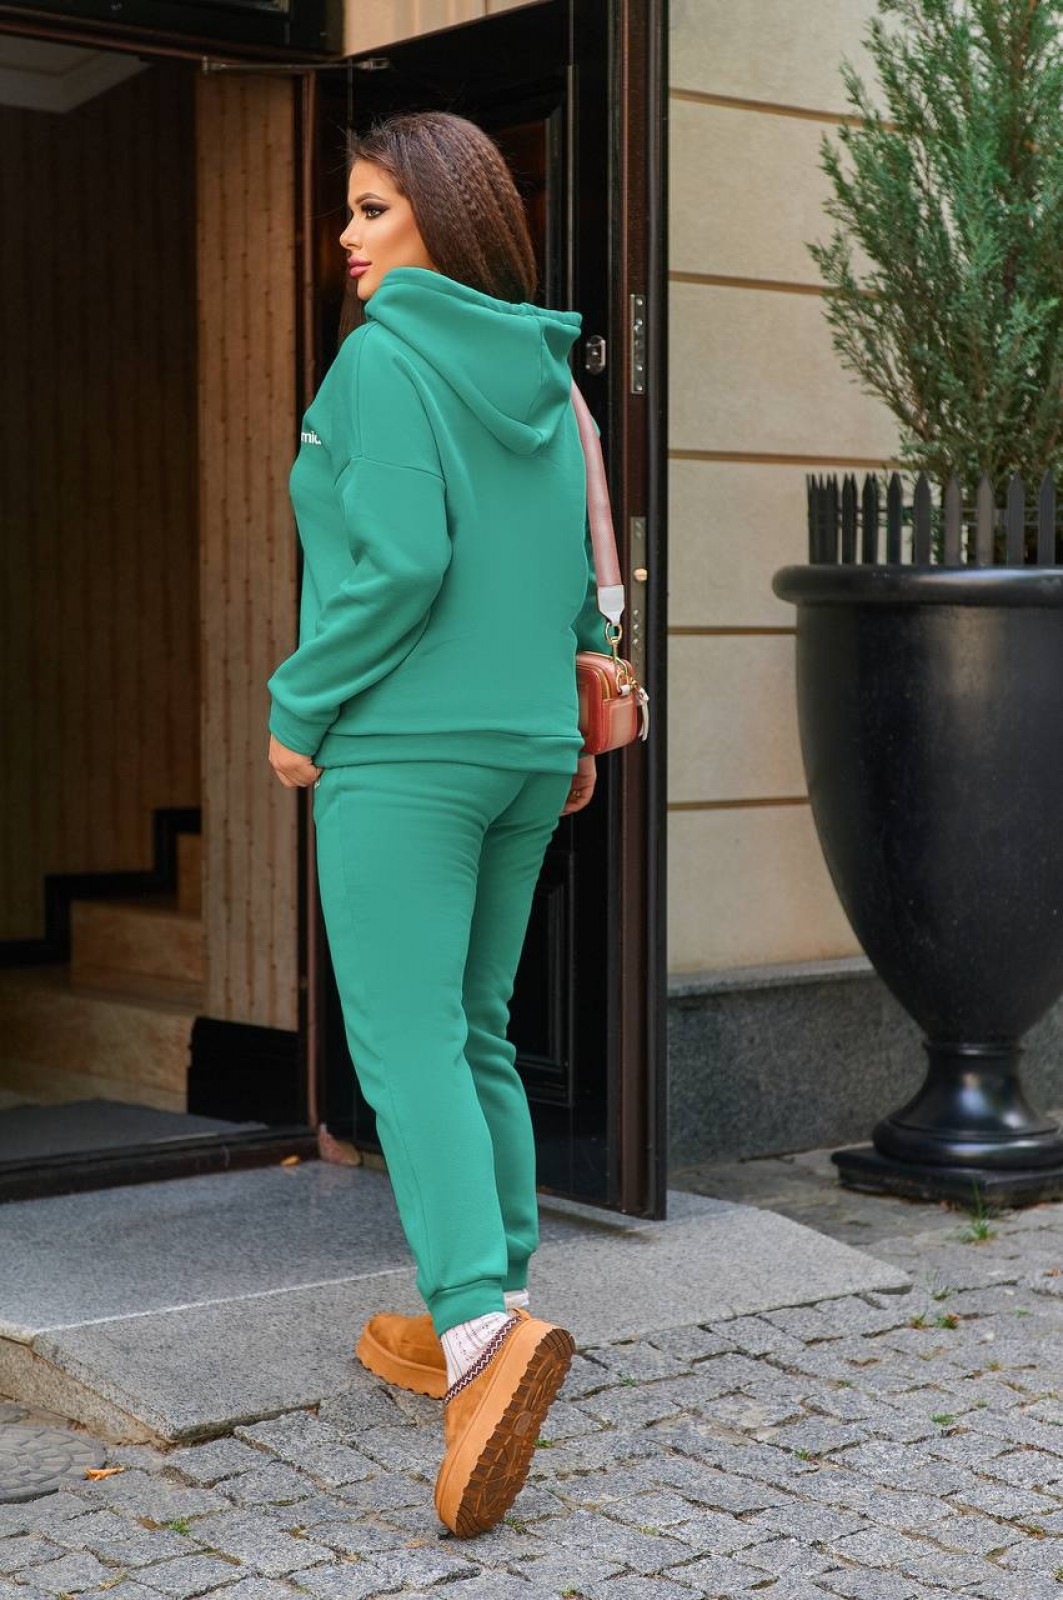 Жіночий спортивний костюм теплий колір зелений р.44/46 441783